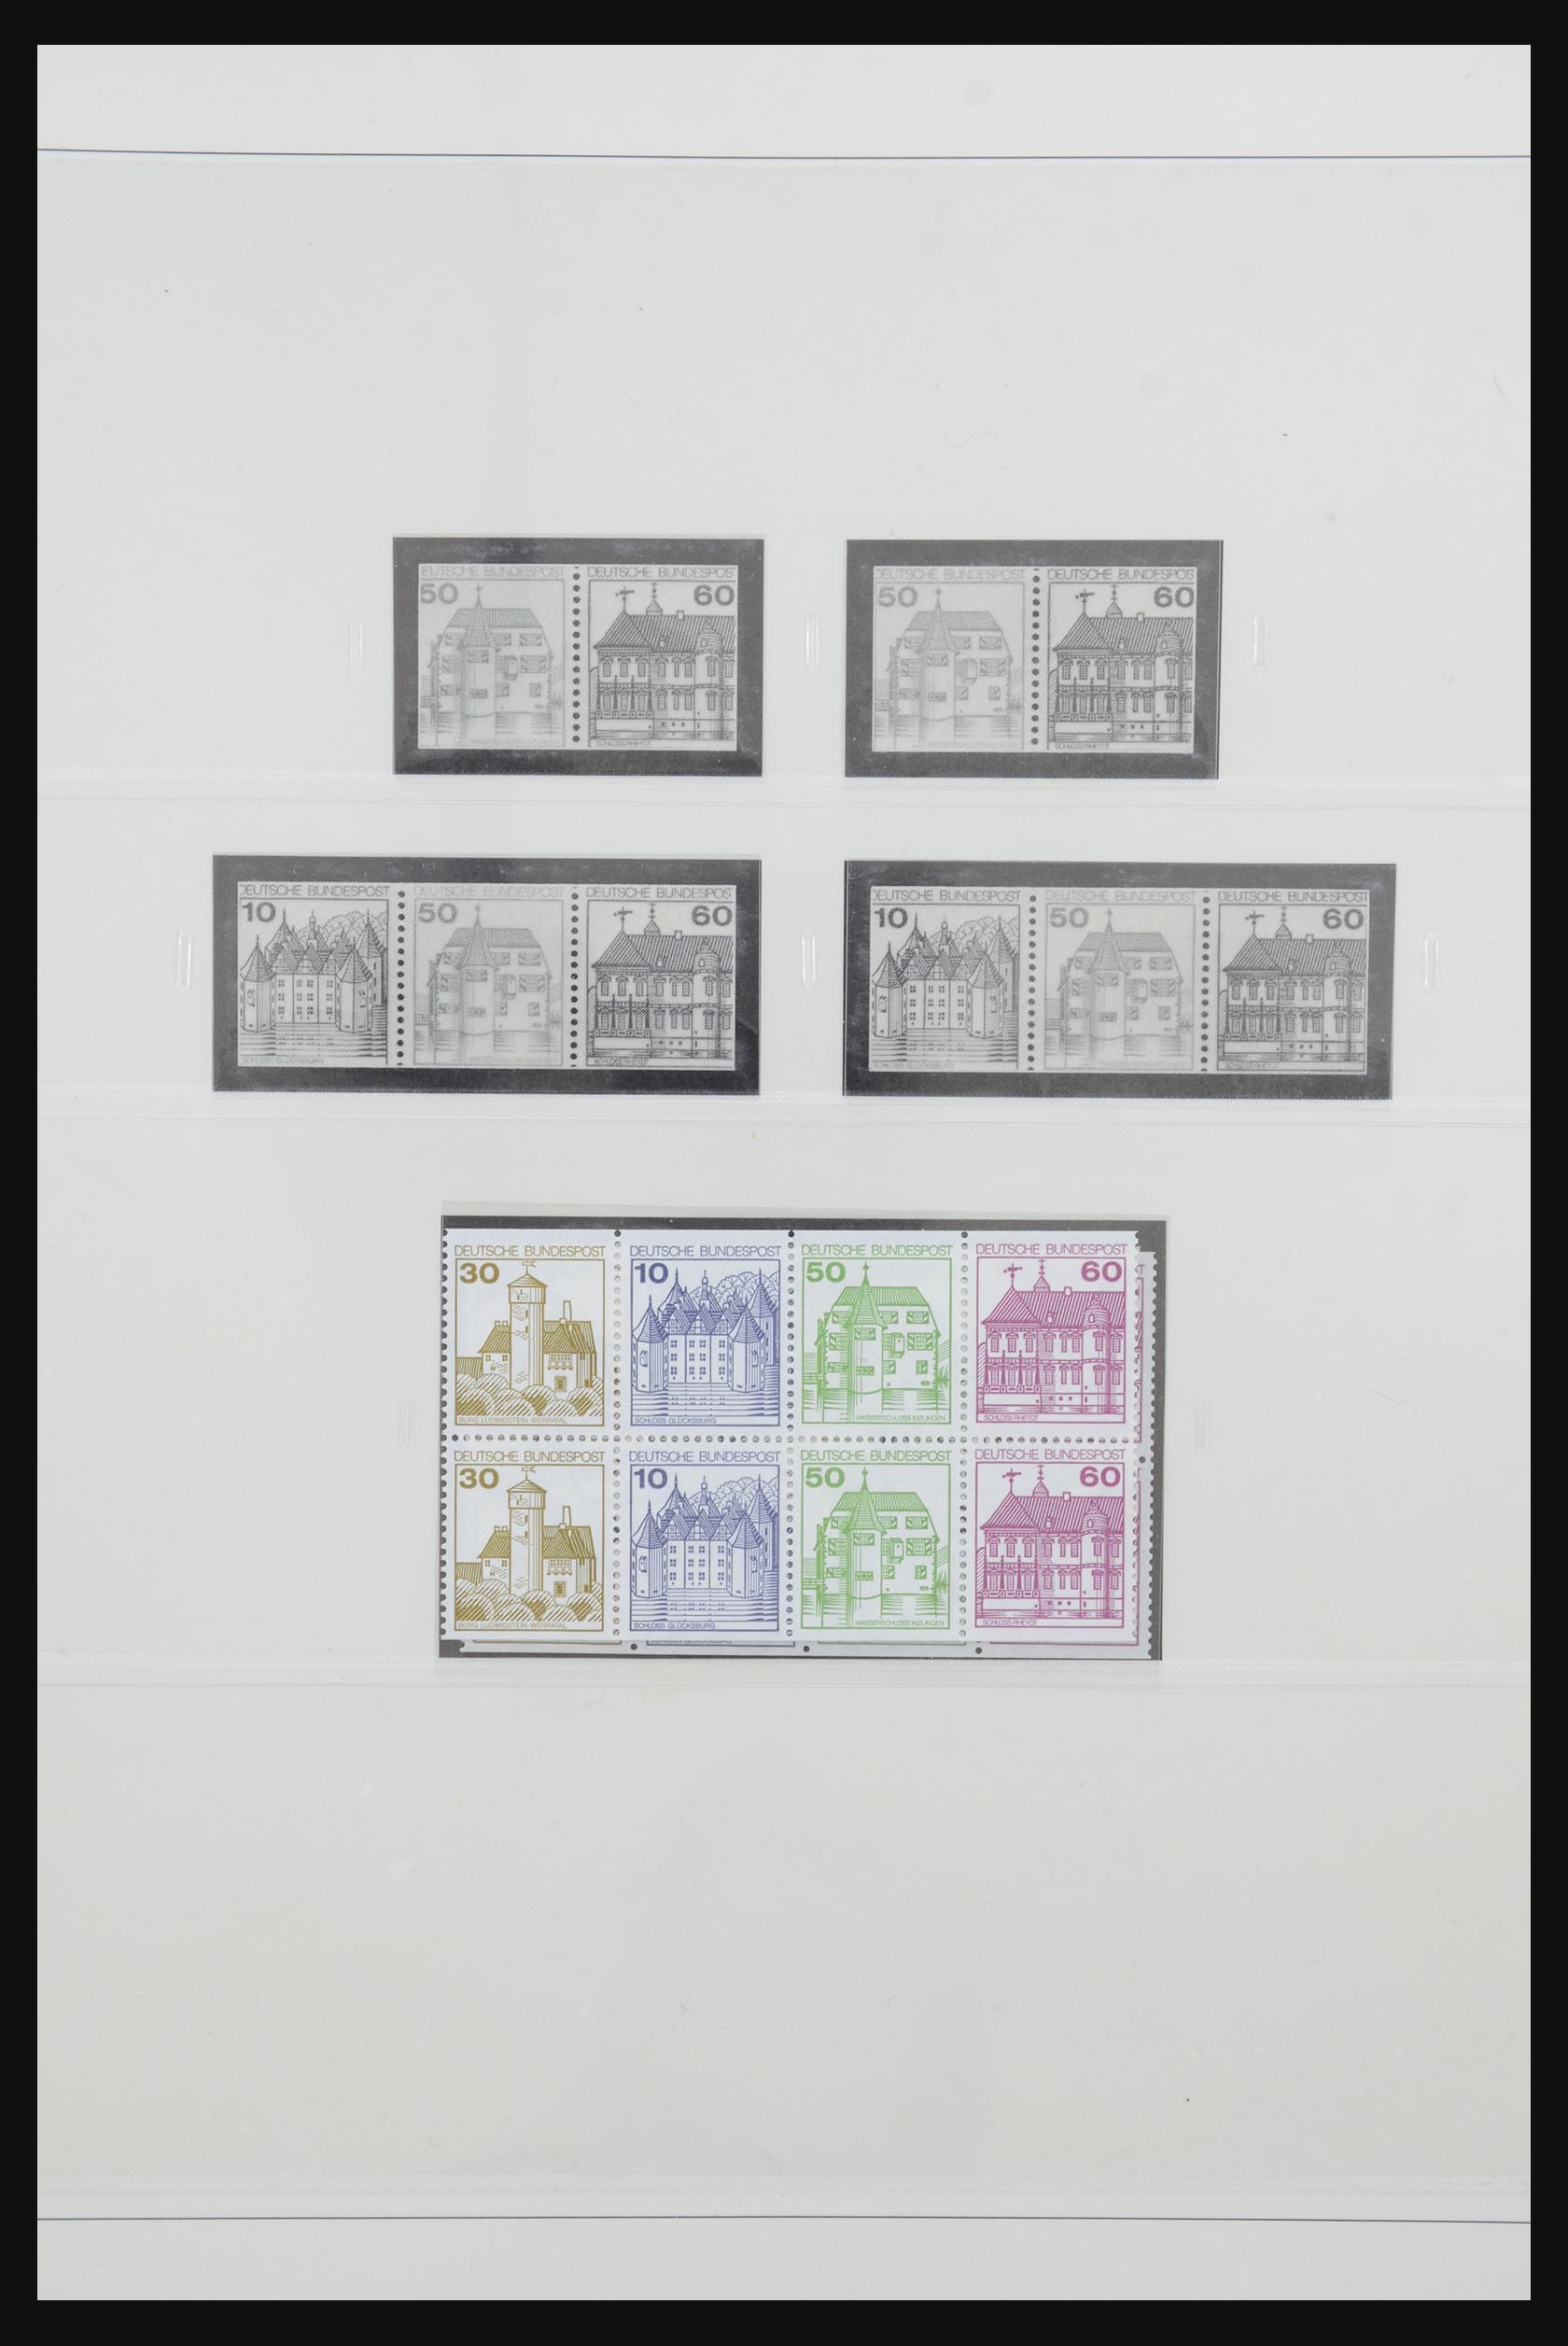 31842 063 - 31842 Bundespost combinations 1951-2003.